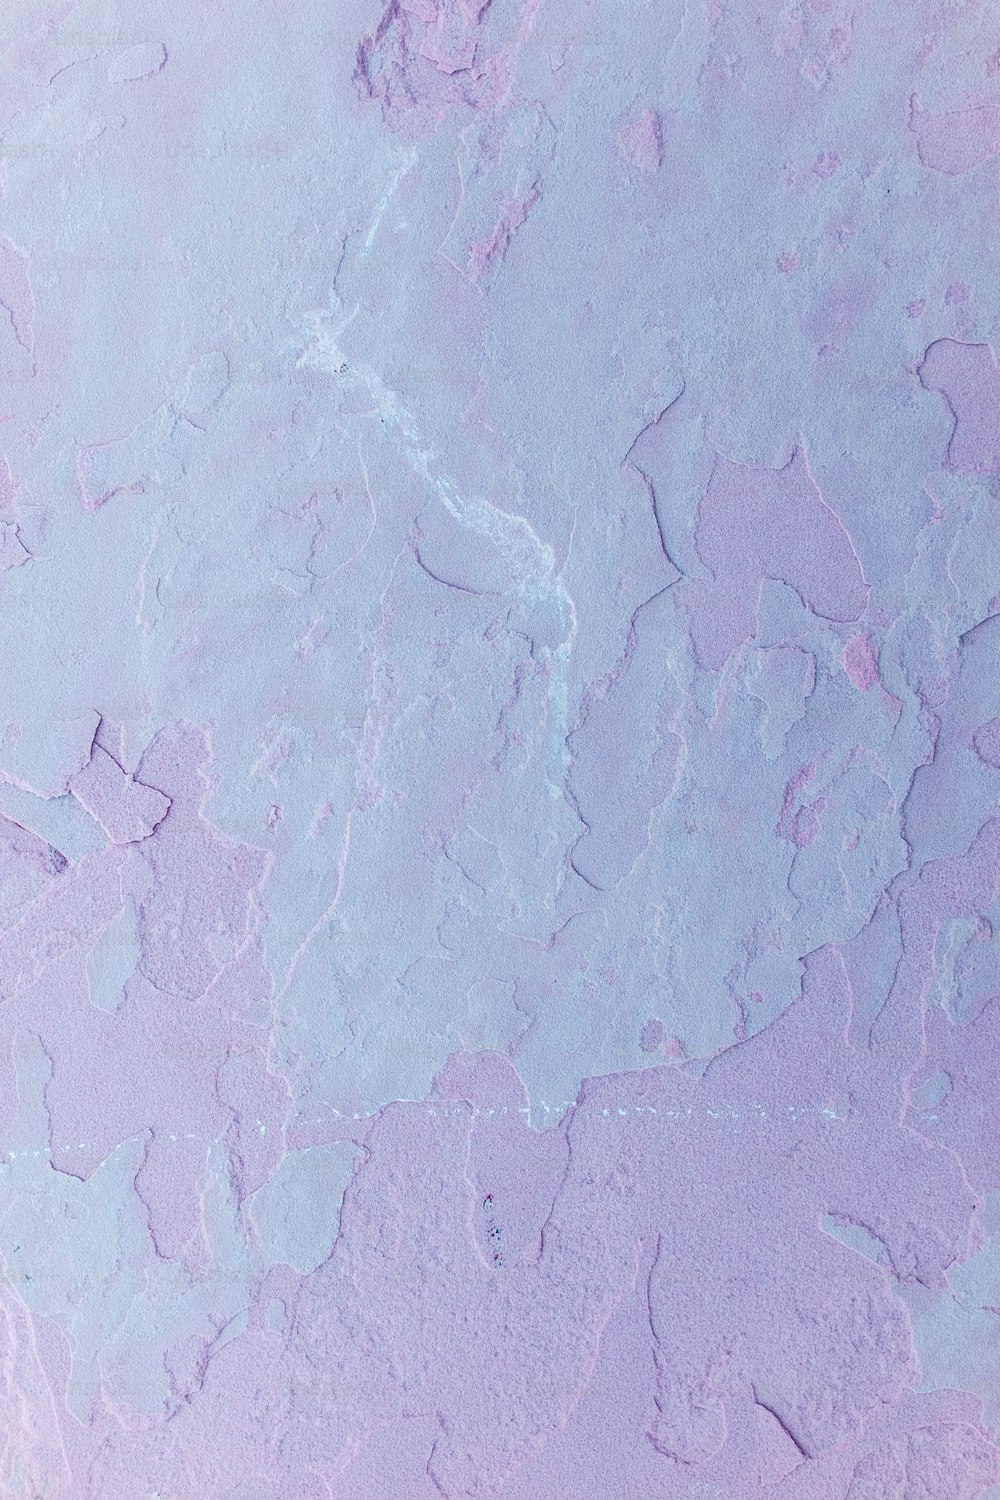 Eine Nahaufnahme eines lila-blauen Hintergrunds